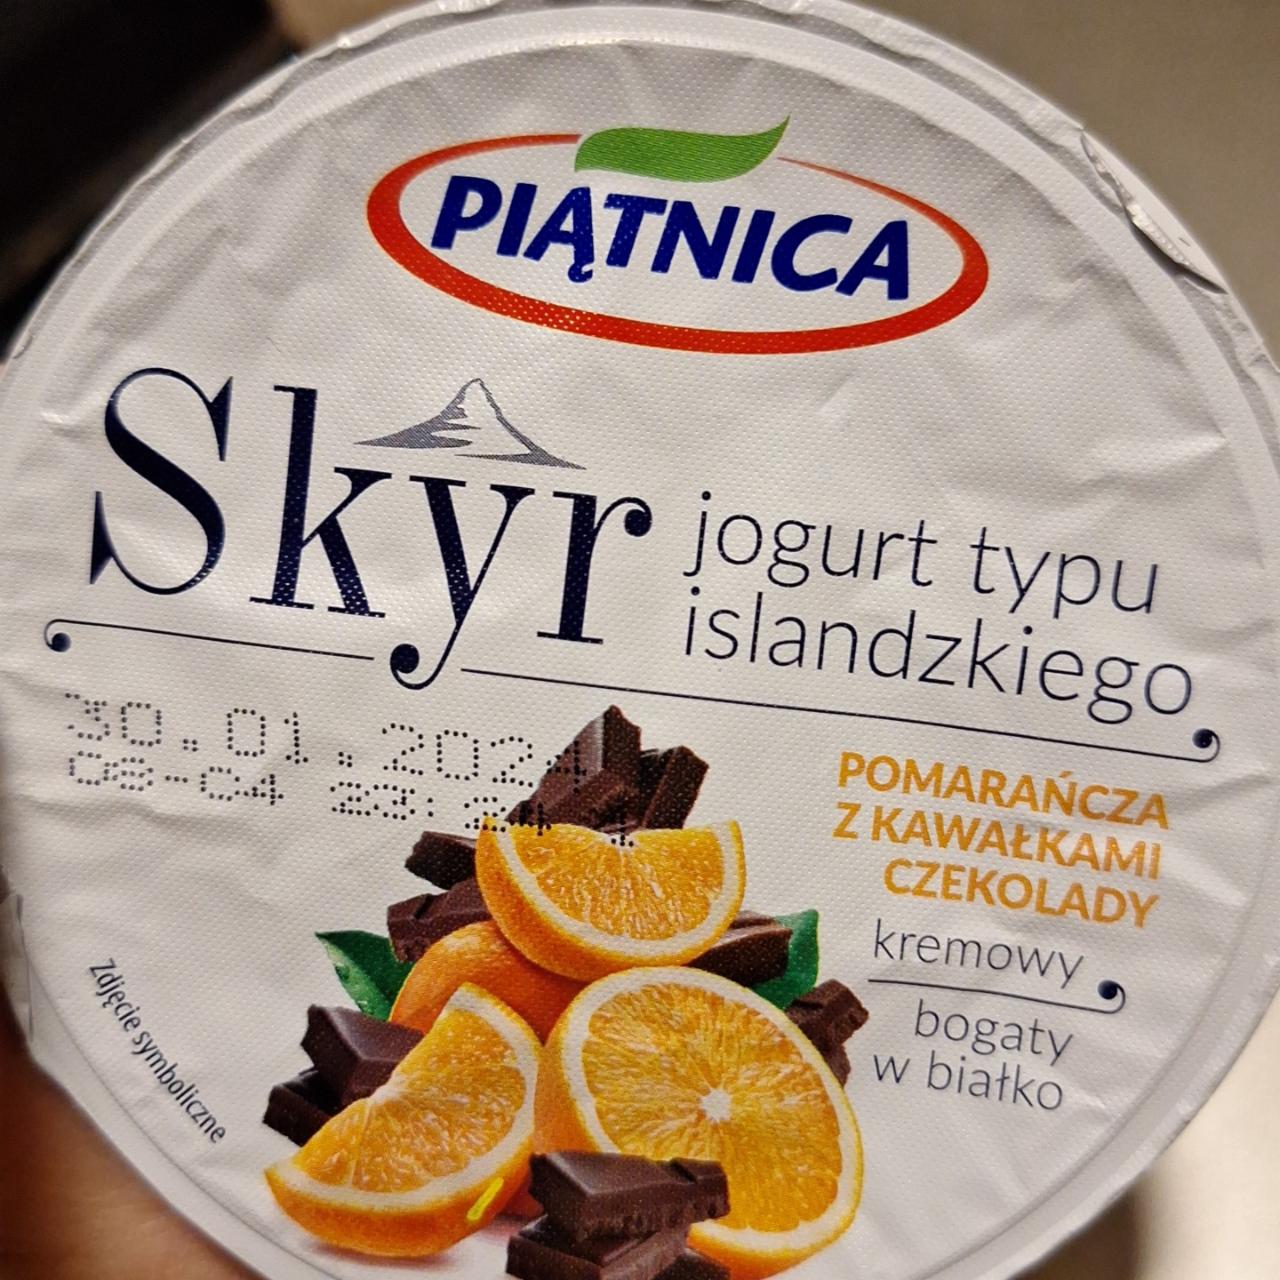 Fotografie - Skyr pomarańcza z kawałkami czekolady Piątnica